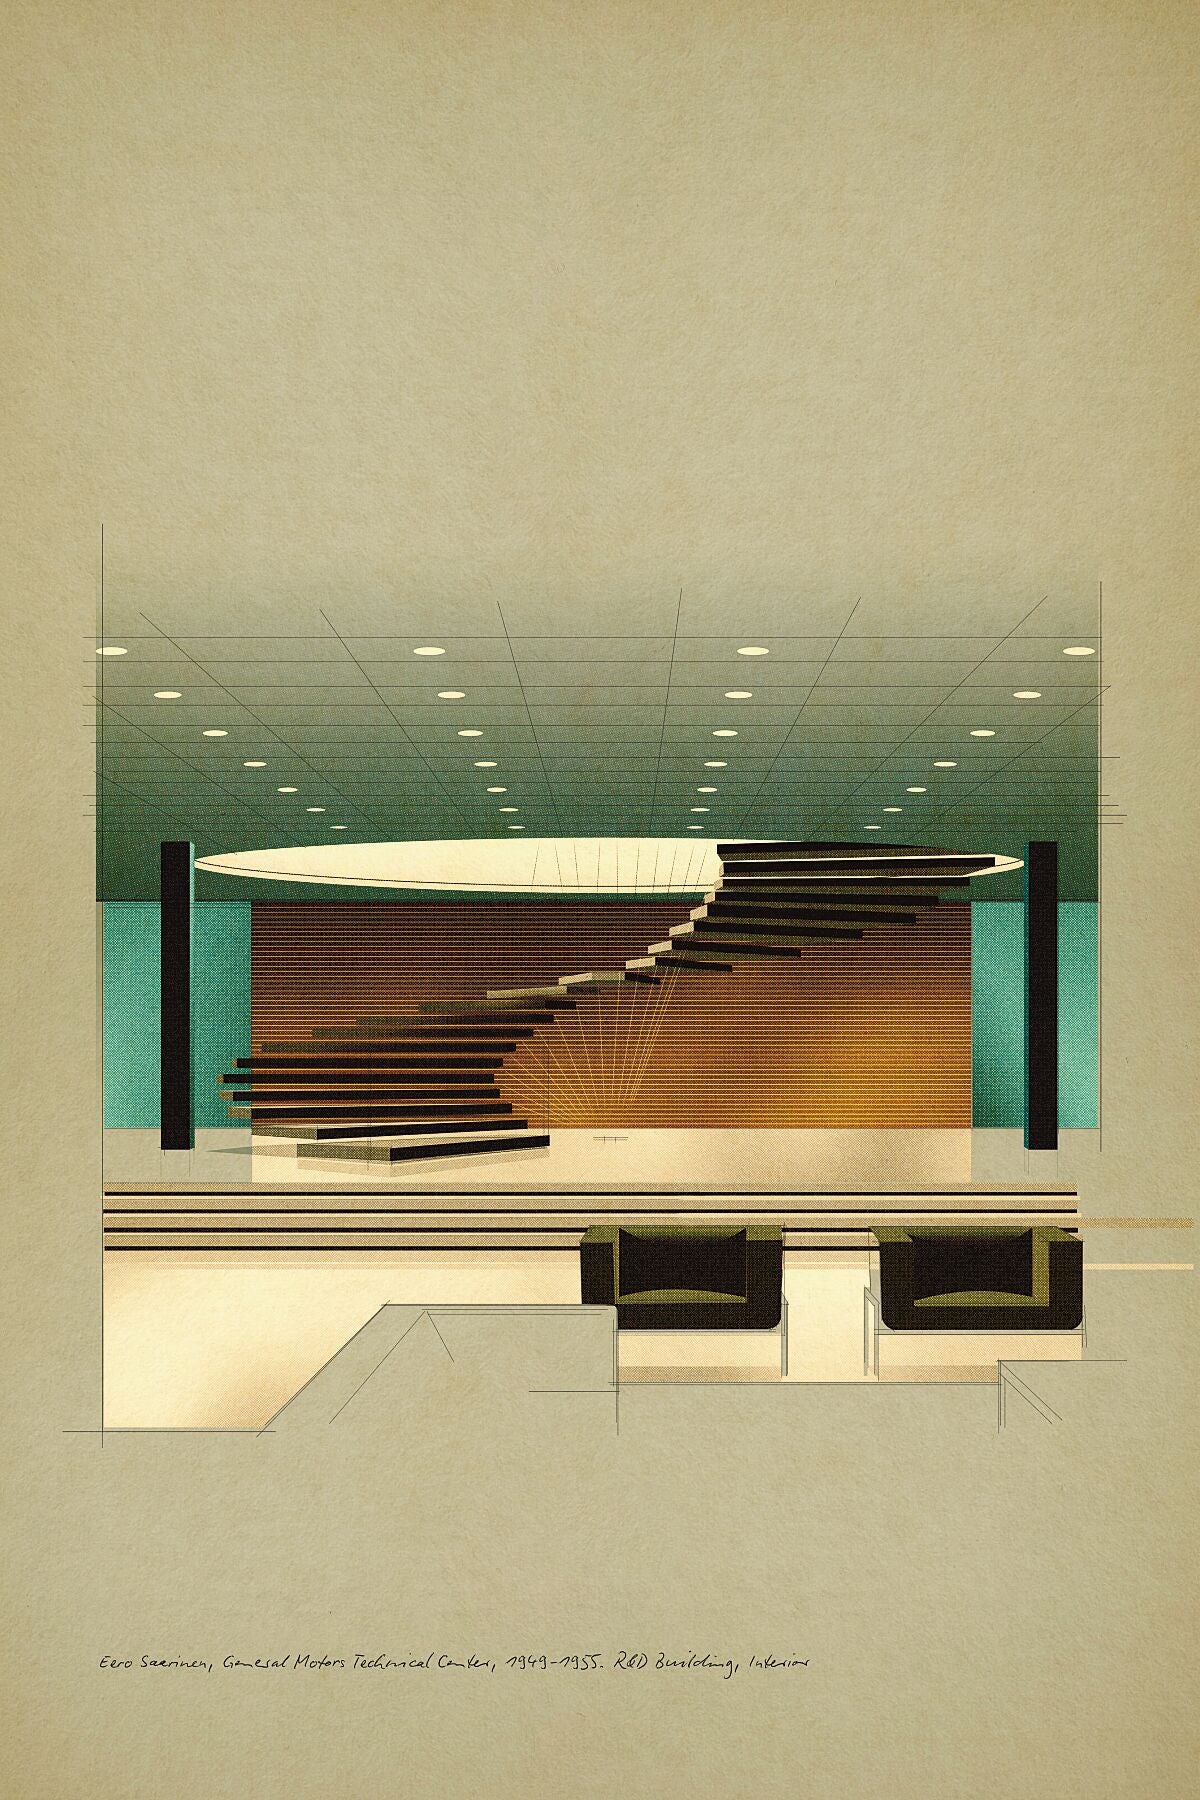 Eero Saarinen, General Motors Technical Center, 1949-1955. R&D Building, Interior